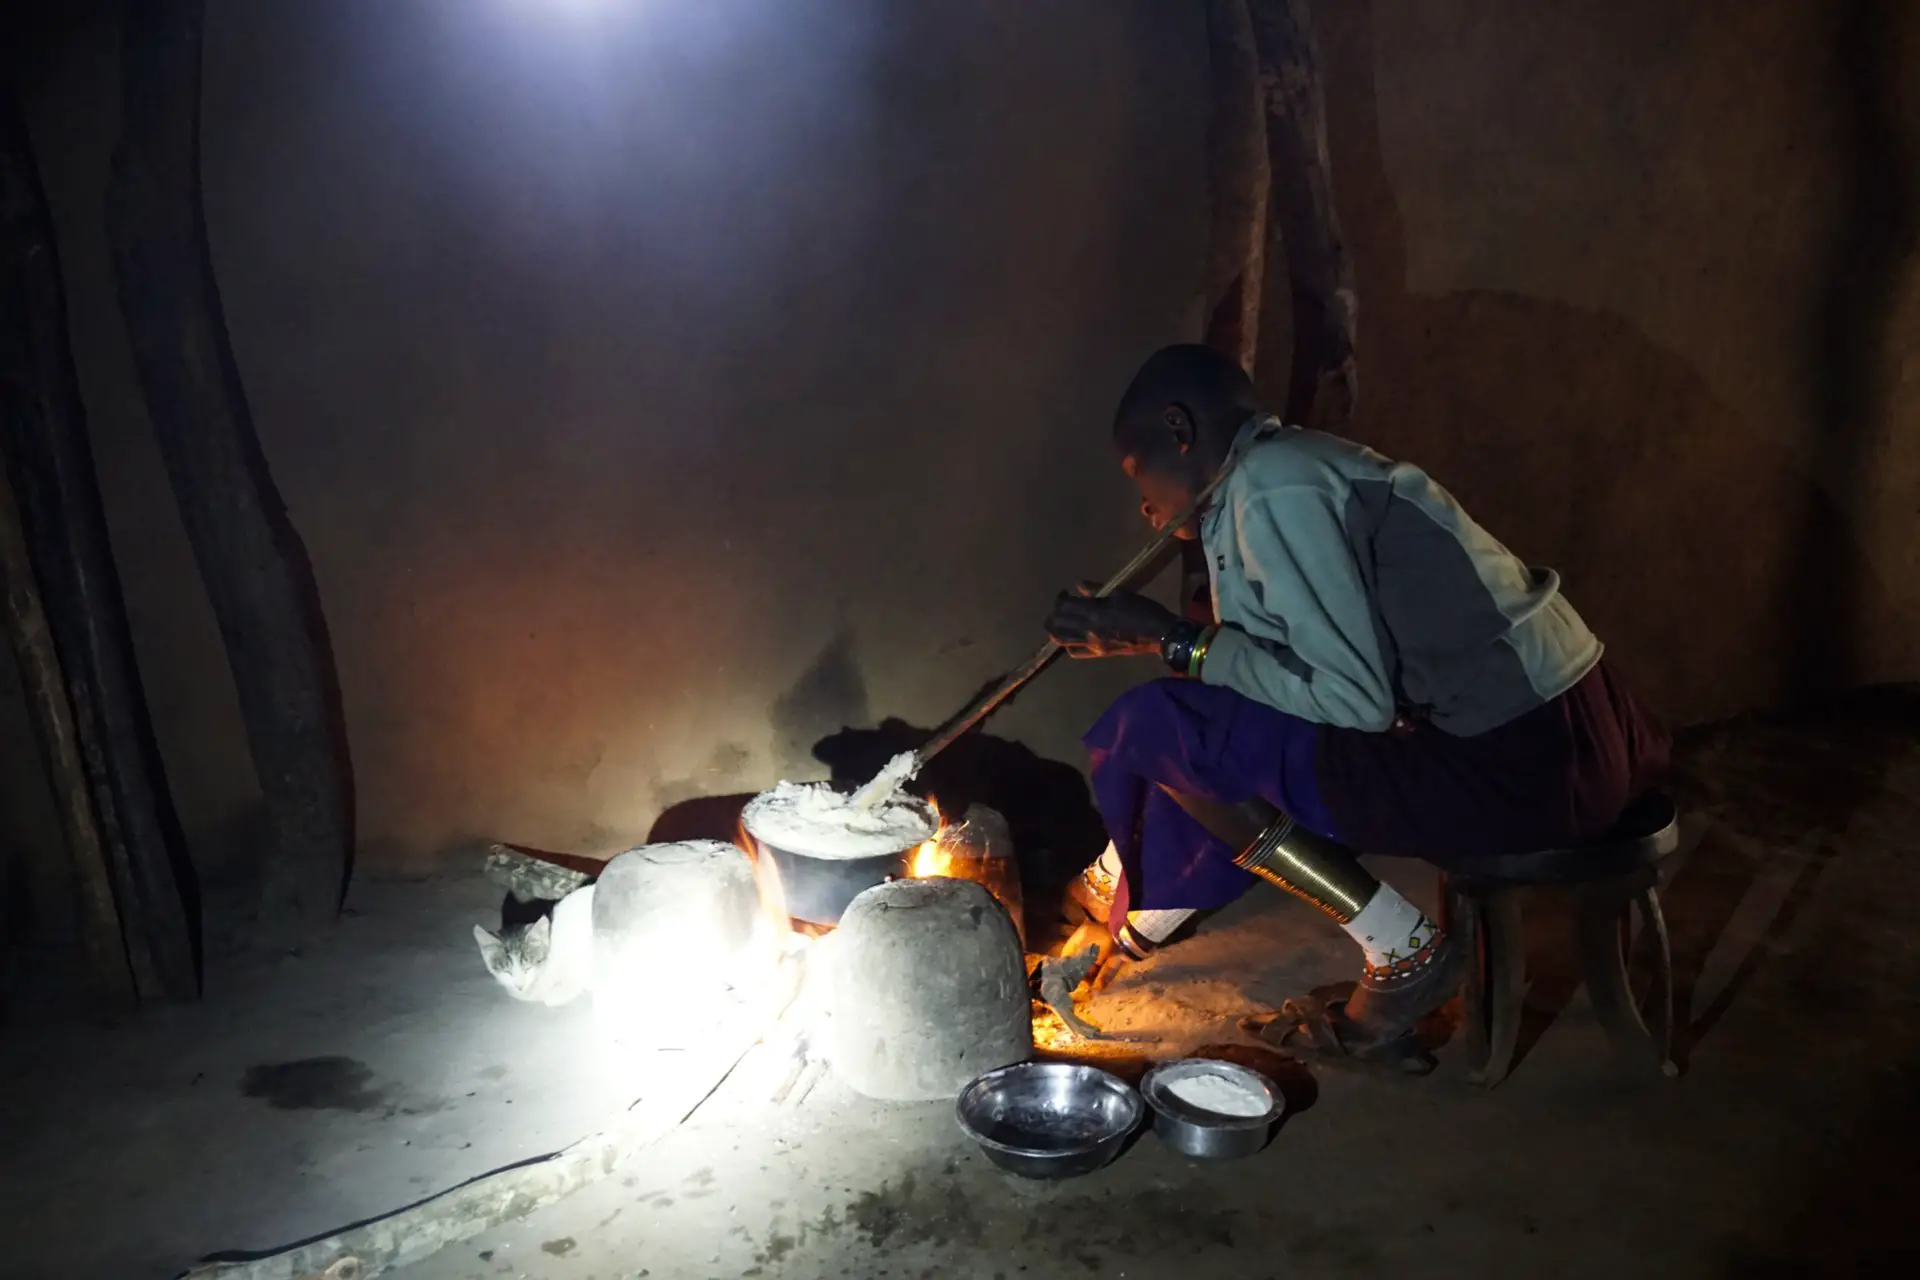 Masai woman cooking ugali, Tanzania - Experiencing The Globe